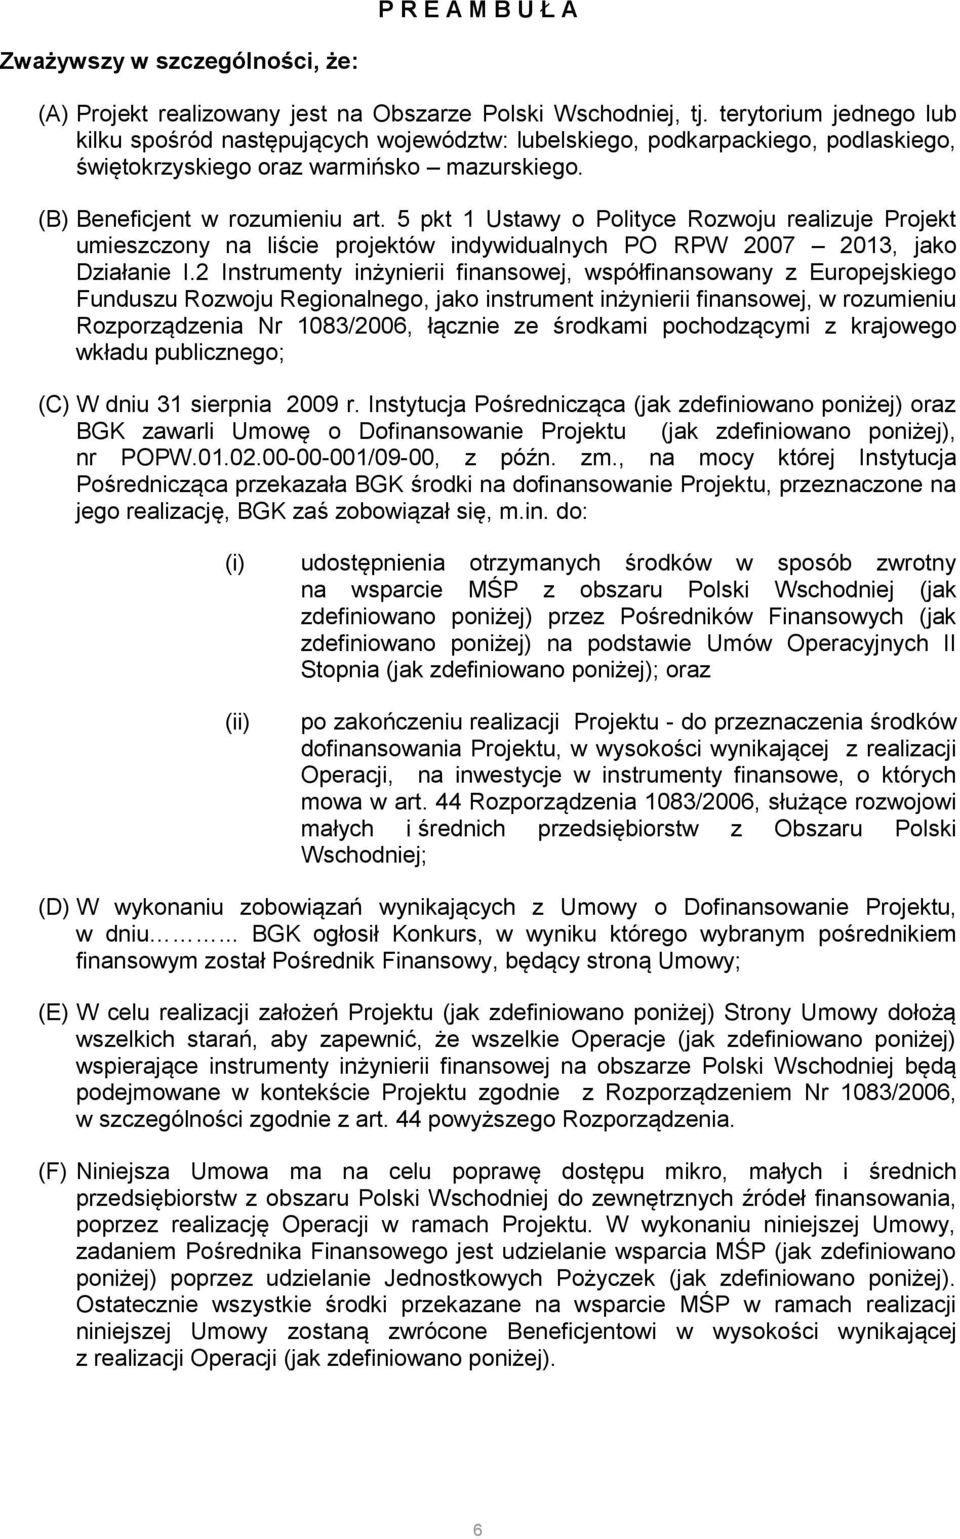 5 pkt 1 Ustawy o Polityce Rozwoju realizuje Projekt umieszczony na liście projektów indywidualnych PO RPW 2007 2013, jako Działanie I.